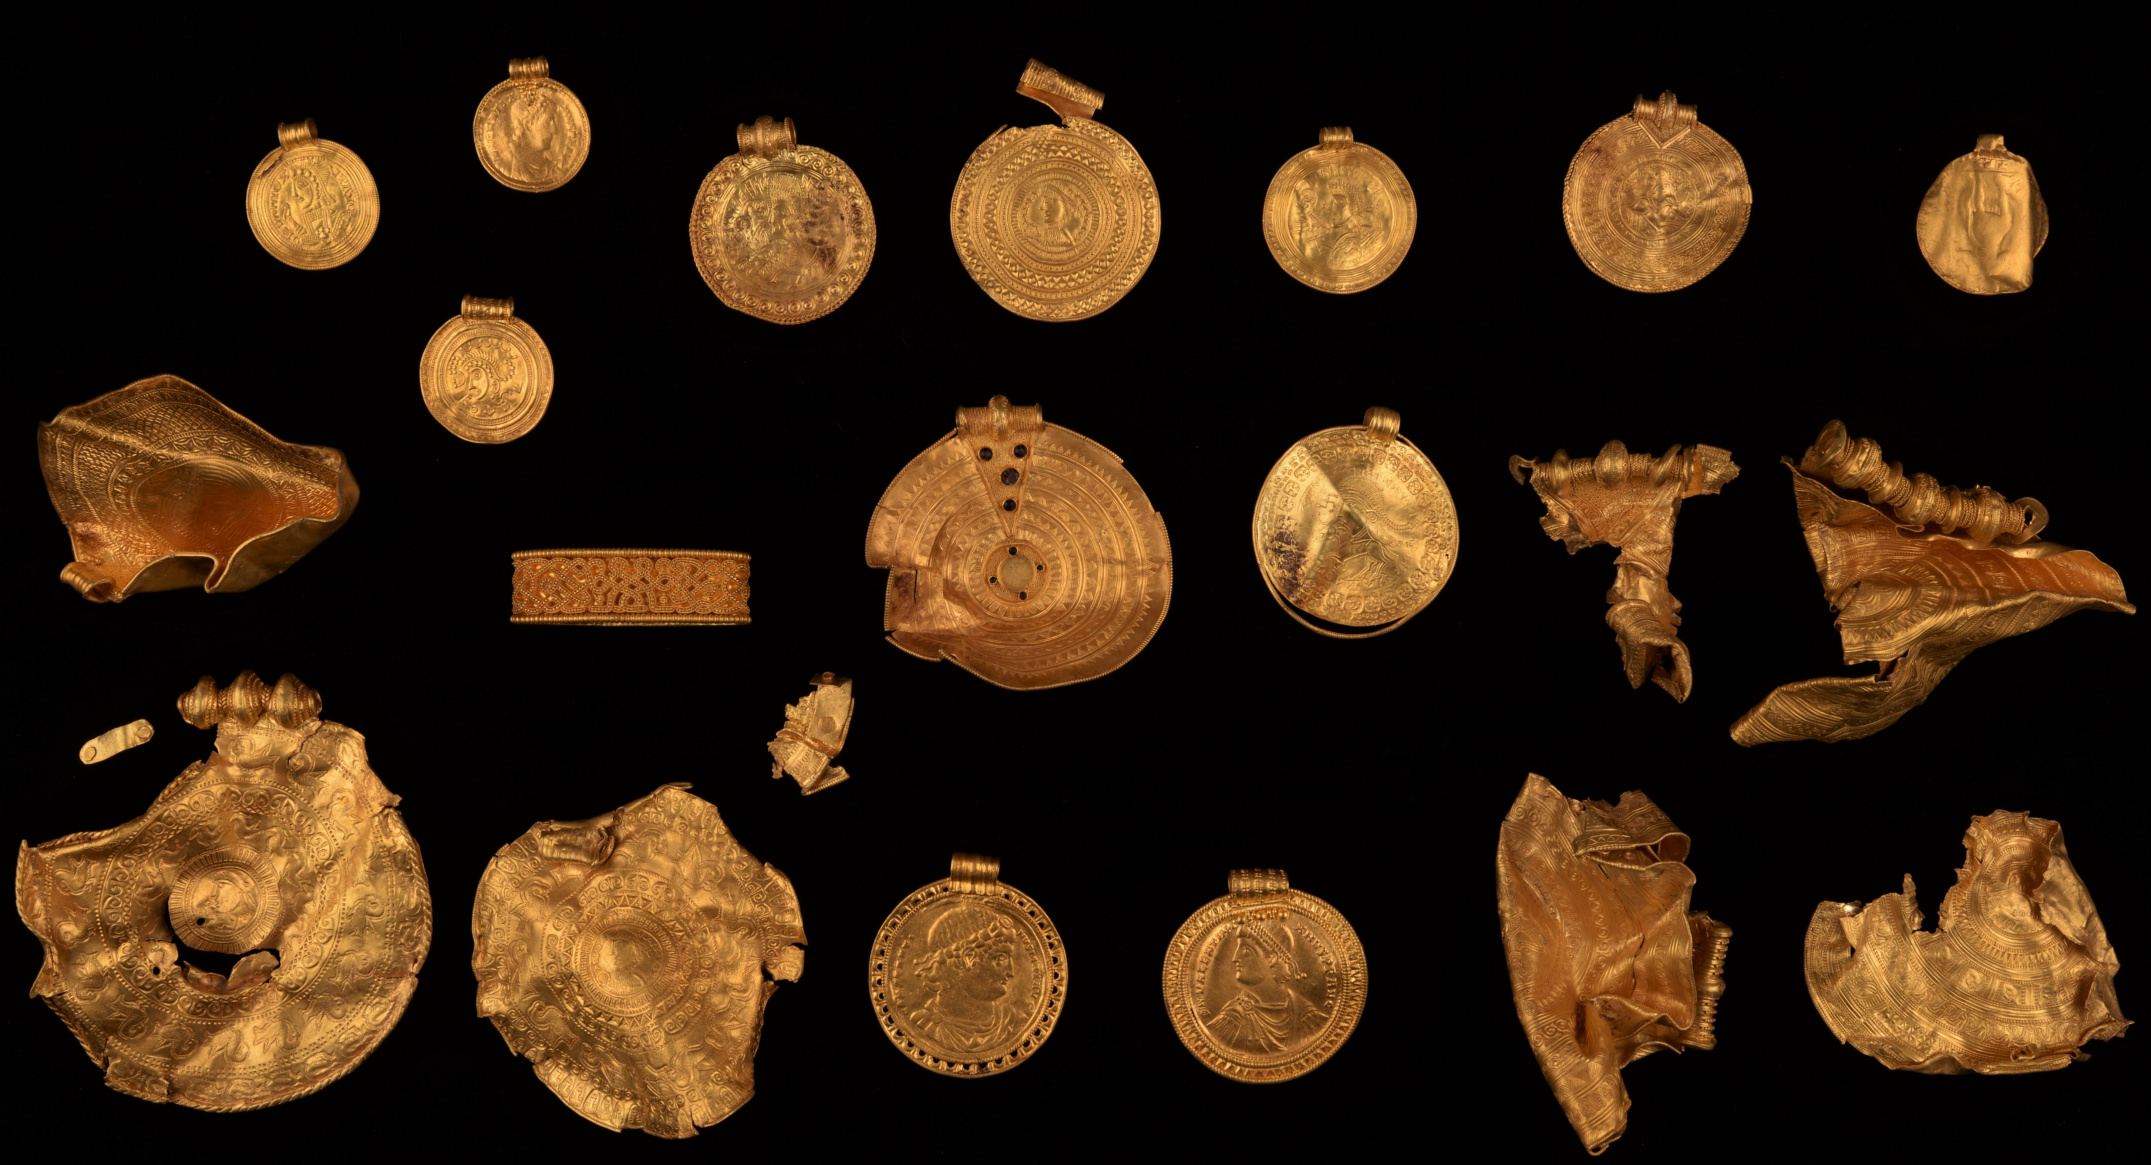 Brakteat je bil del zakopane Vindelevske zaklade zlatih predmetov, nekateri od njih iz petega stoletja našega štetja, ki so jo leta 2021 izkopali na vzhodu danske regije Jutland.